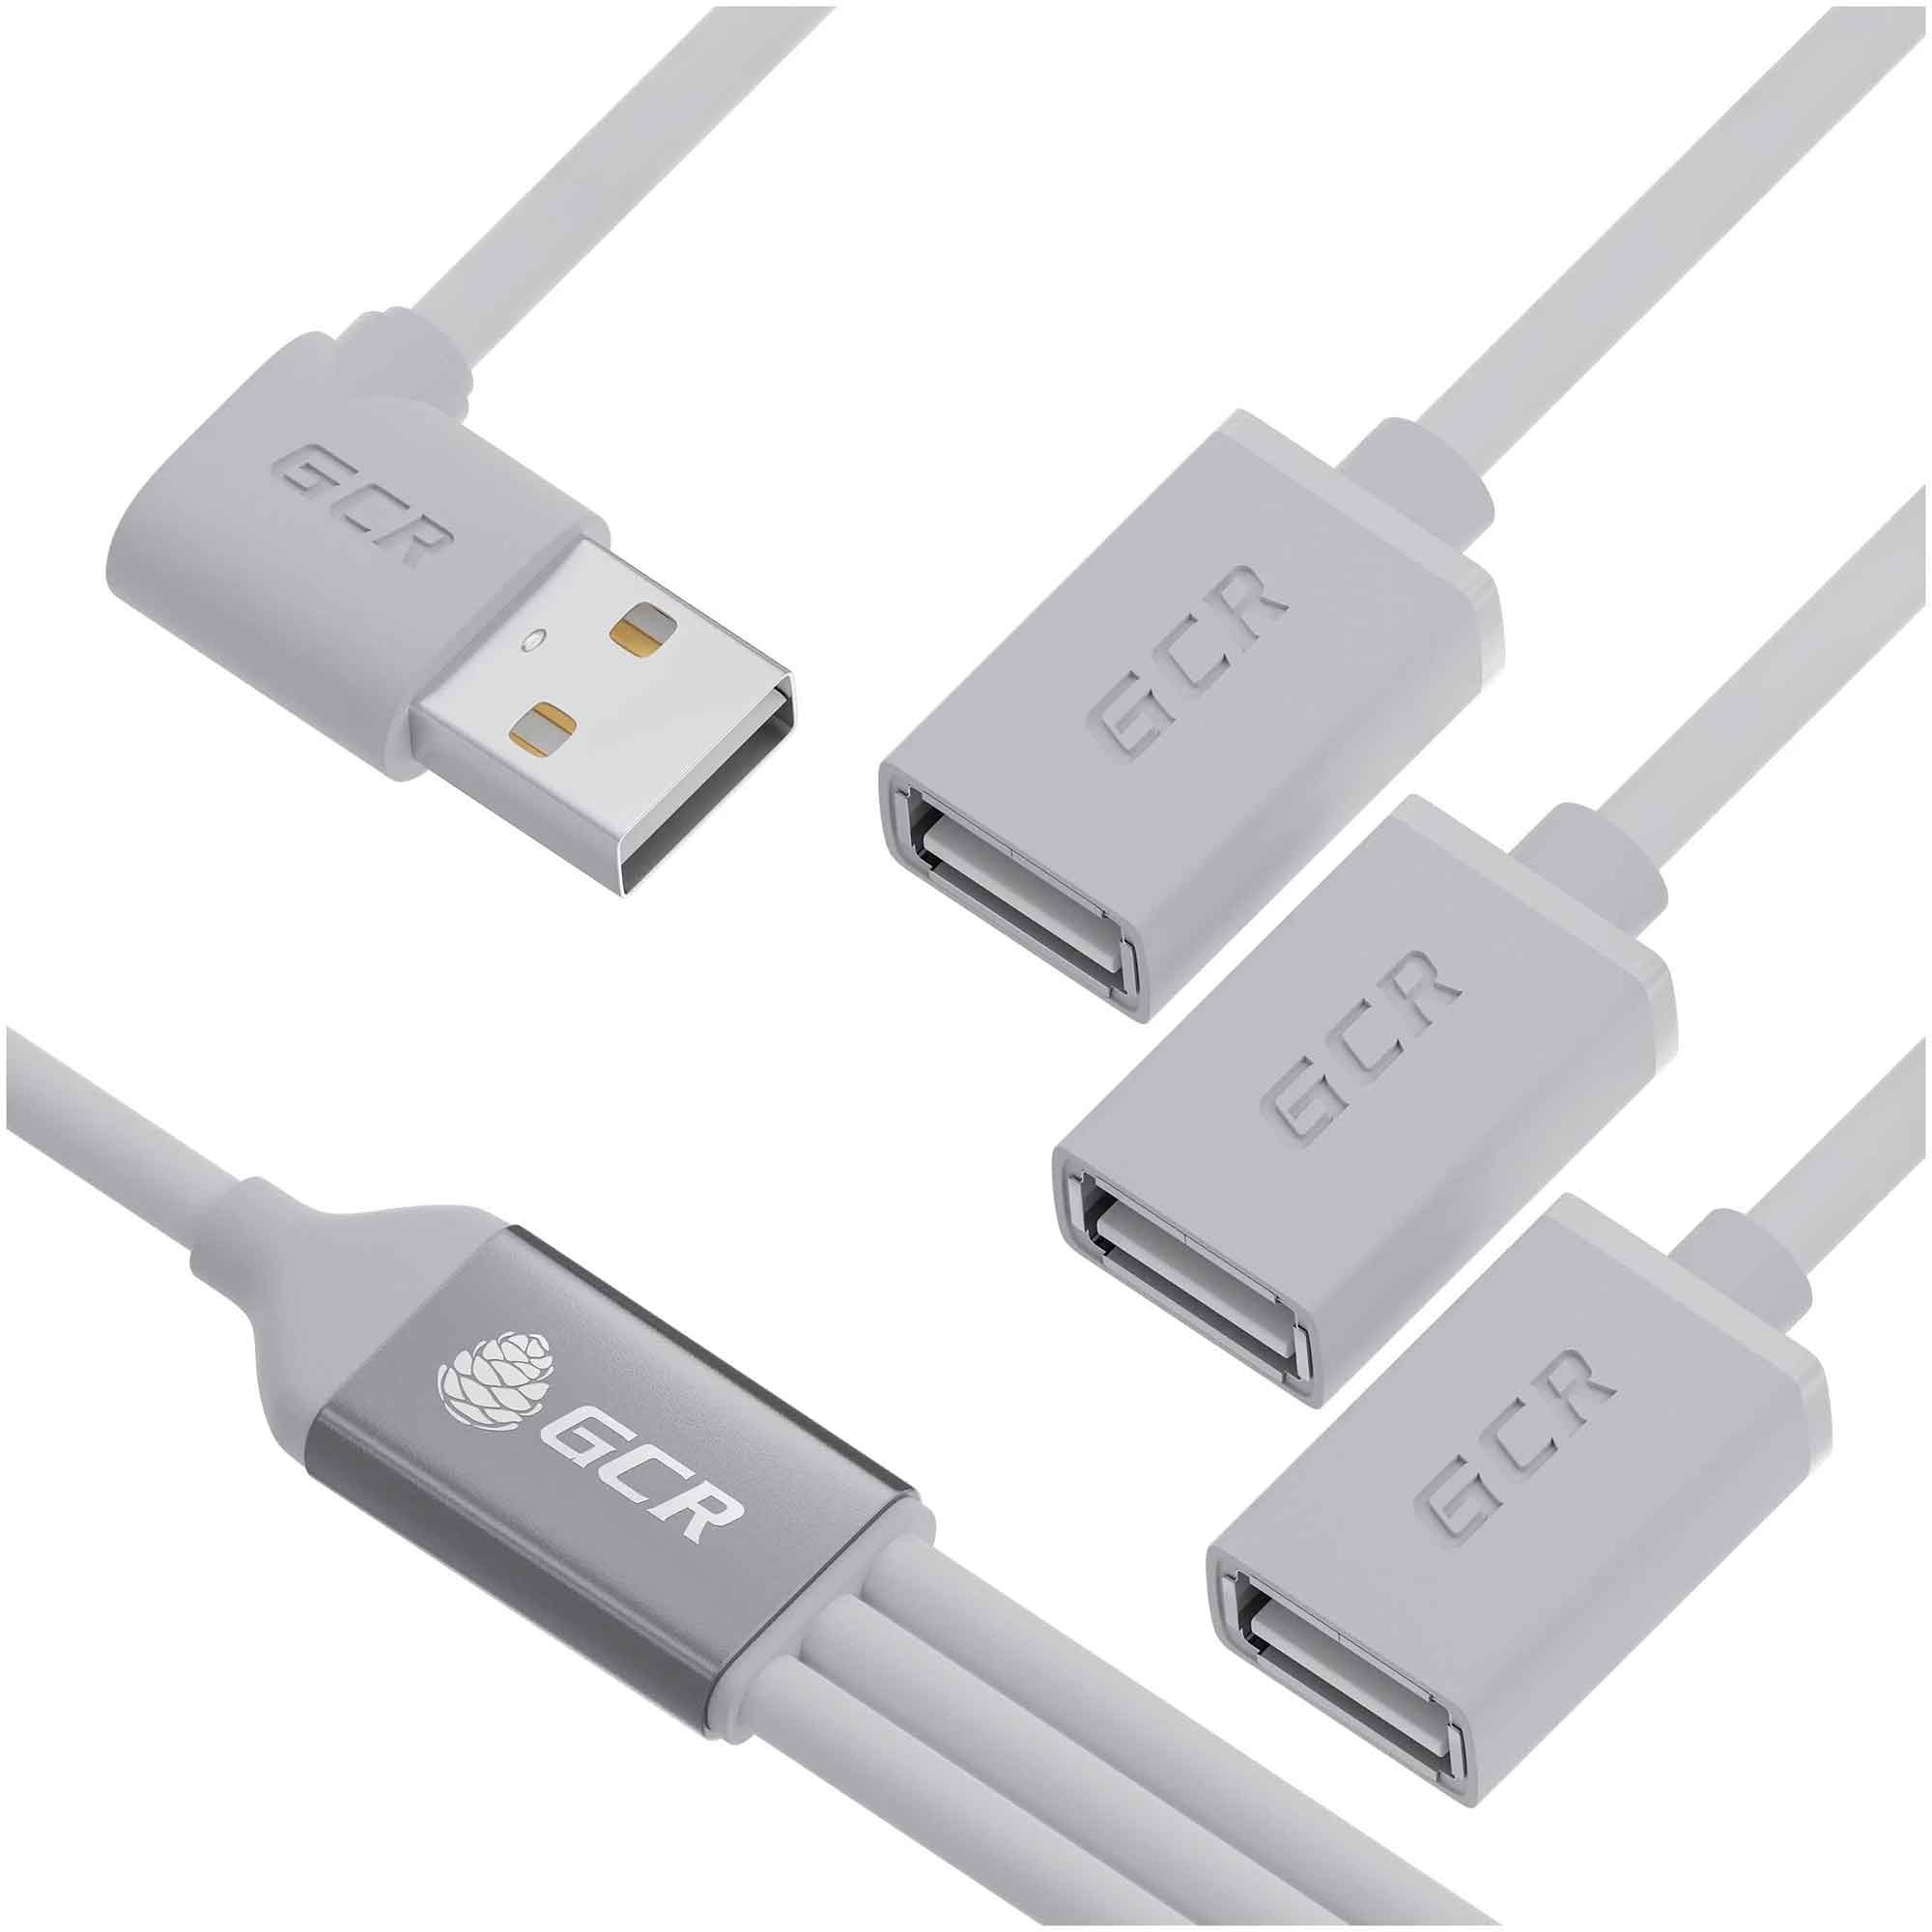 Хаб USB GCR Hub 2.0 на 3 порта, 0.35m, гибкий белый GCR-53355 хаб usb gcr hub 2 0 на 3 порта 1 2m гибкий белый gcr 53356